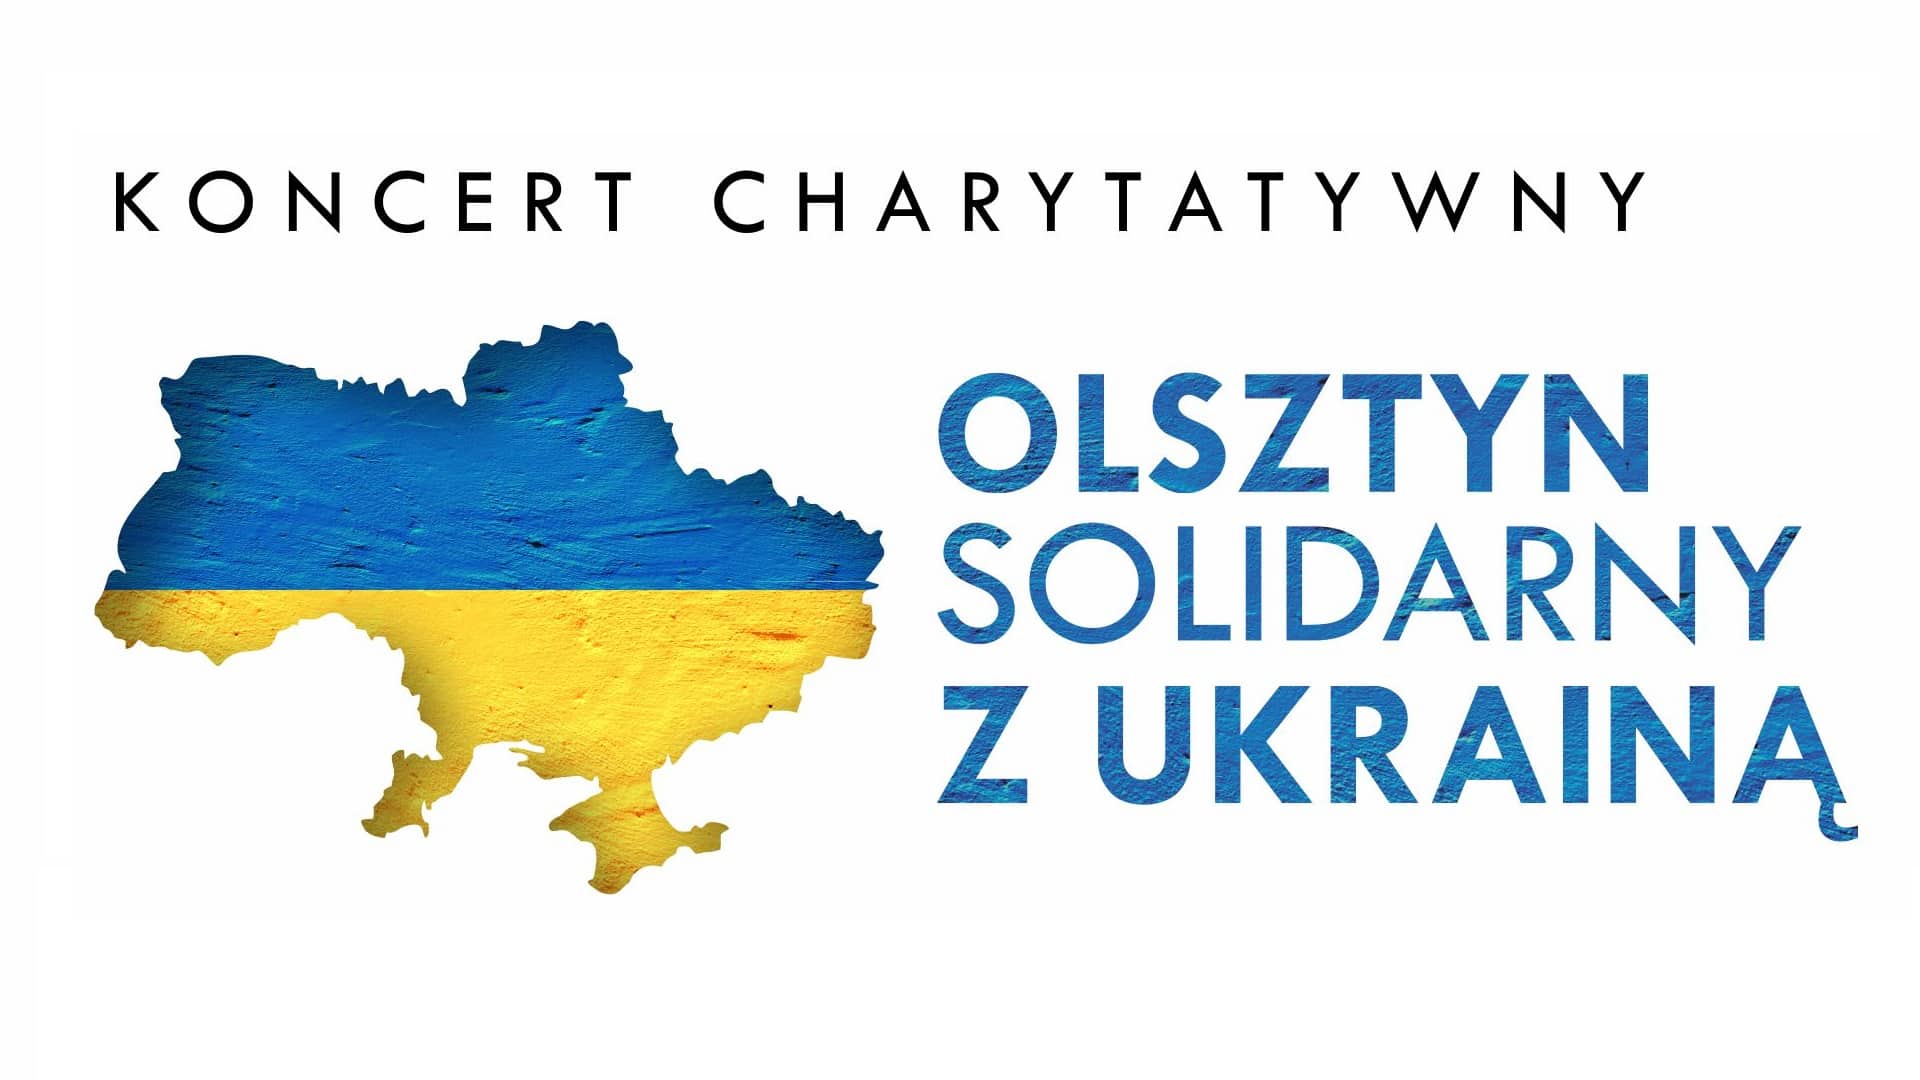 Zapraszamy na koncert charytatywny "Olsztyn solidarny z Ukrainą" ukraina Wiadomości, Olsztyn, zemptypost, zPAP